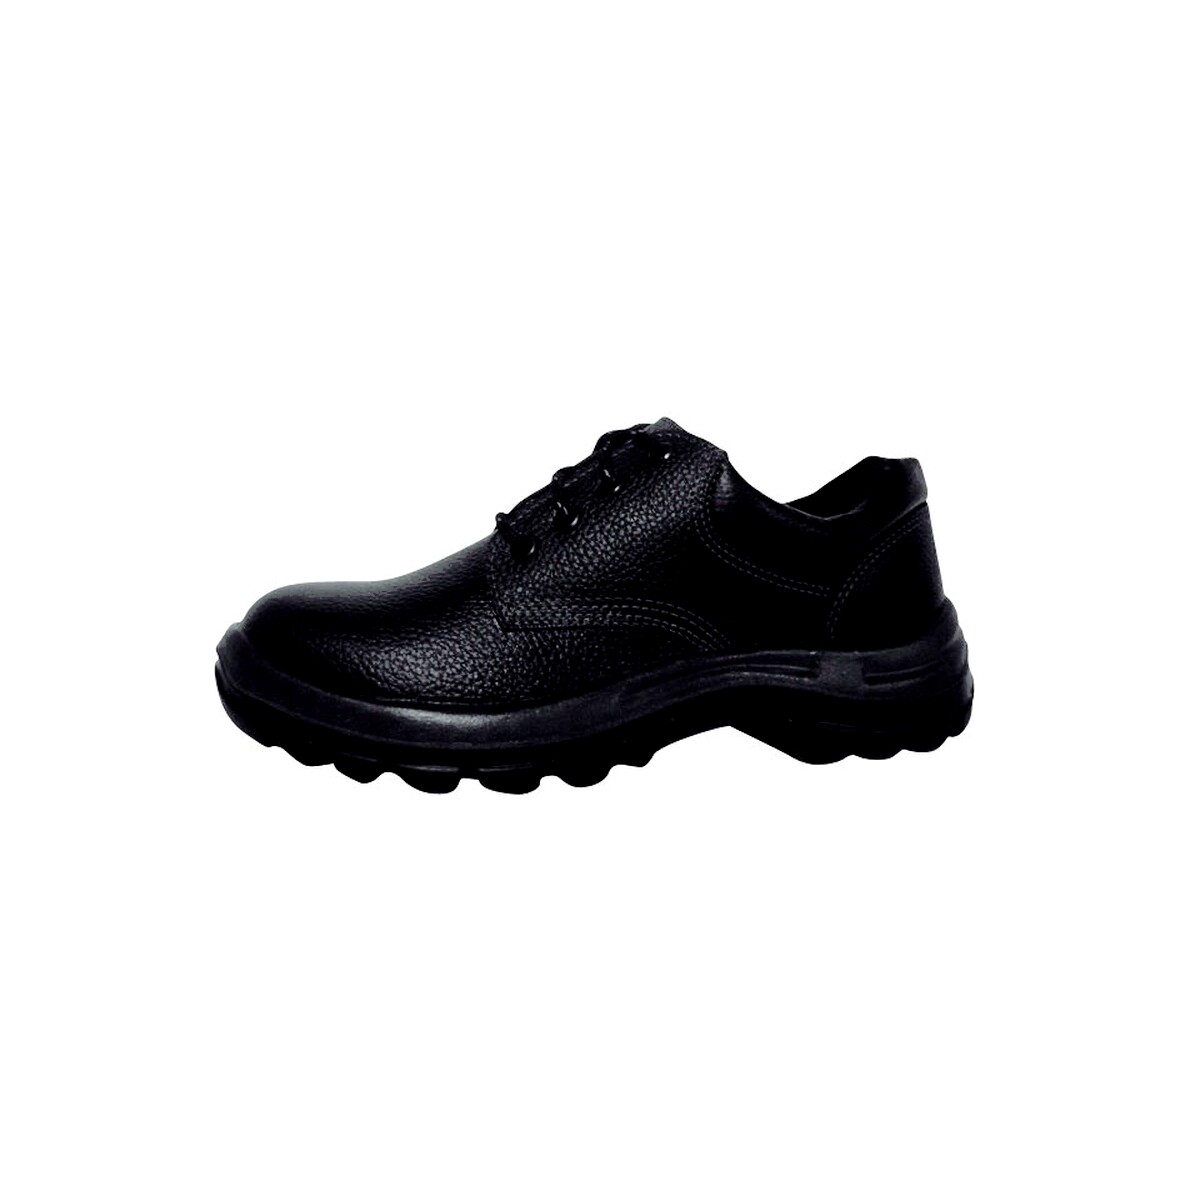 Zapato industrial con puntera plástica - Worksafe Nº 44 